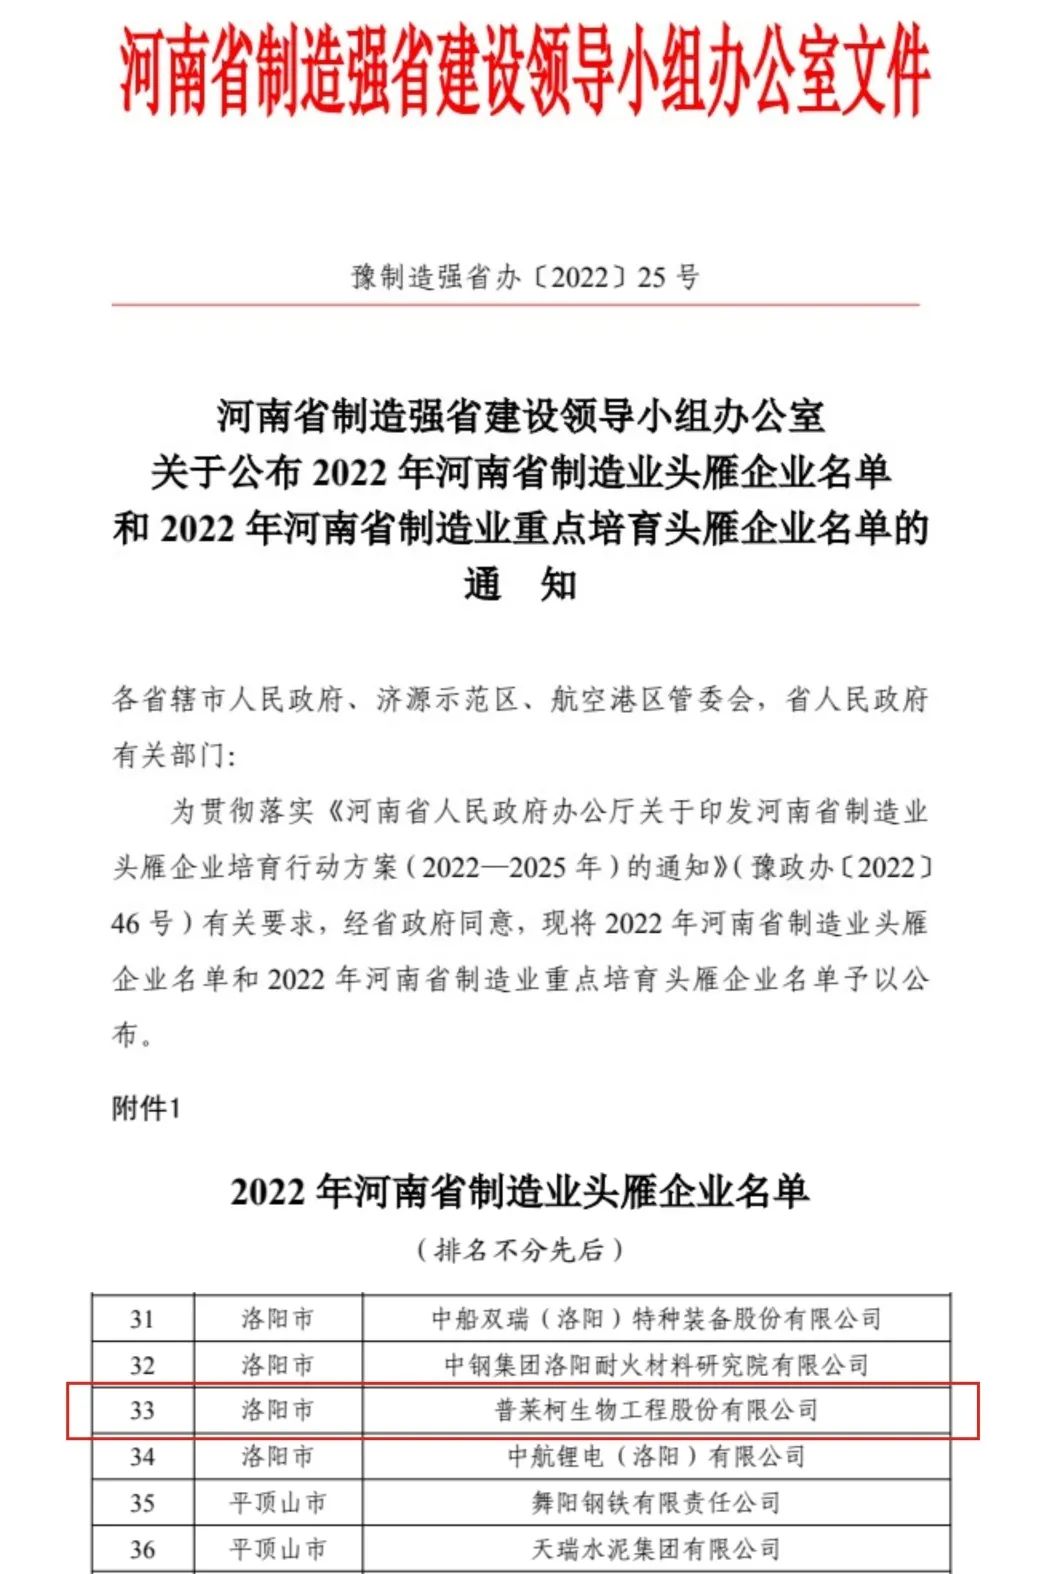 2022 年河南省制造业头雁企业名单